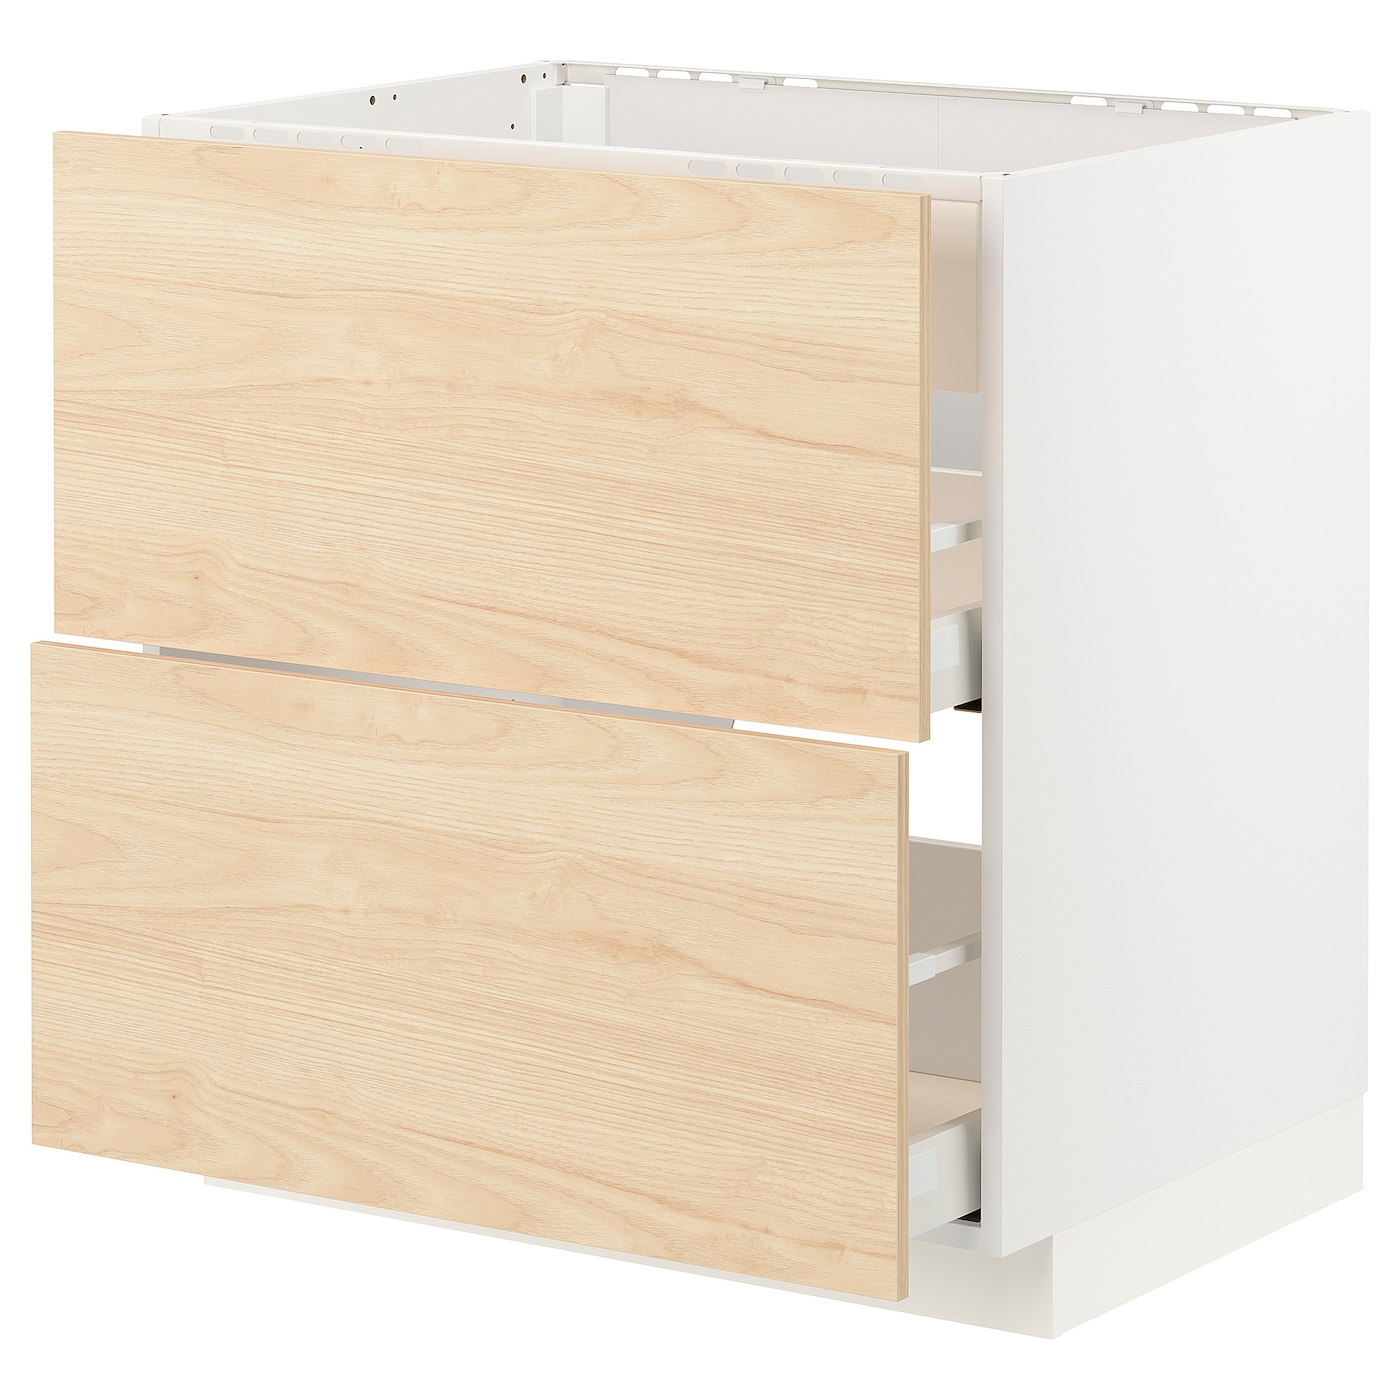 Напольный шкаф - IKEA METOD MAXIMERA, 88x62x80см, белый/светлый ясень, МЕТОД МАКСИМЕРА ИКЕА